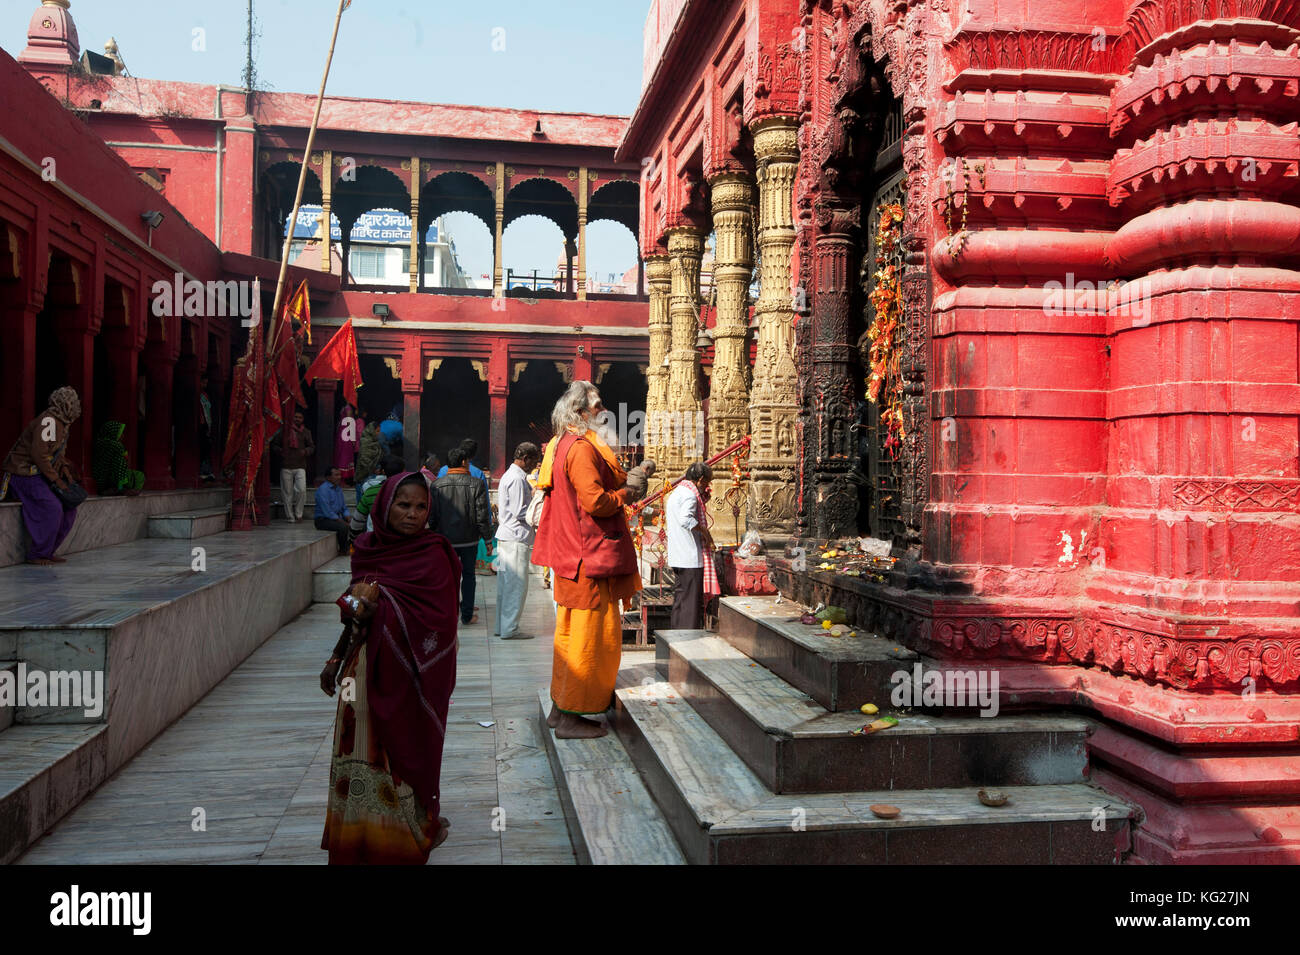 Hinduistische Pilger in Safran und Rot, Besuch des Durga Mandir, eines der berühmtesten Tempel in Varanasi, Uttar Pradesh, Indien, Asien Stockfoto